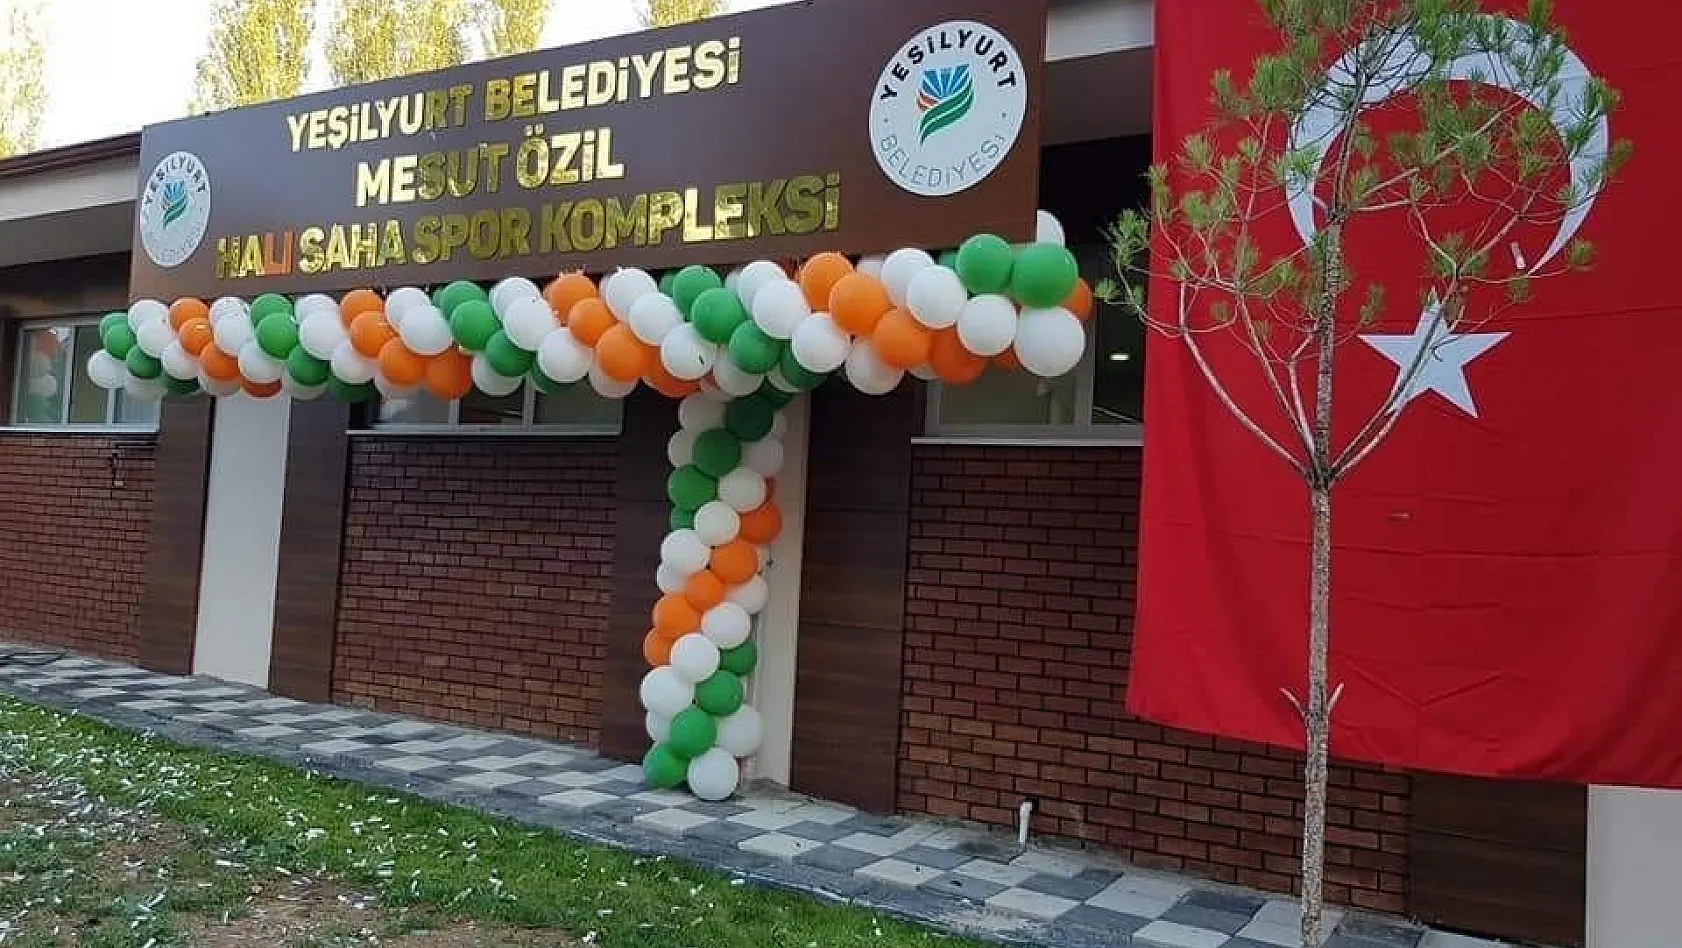 Malatya'da Mesut Özil adına spor kompleksi açıldı 